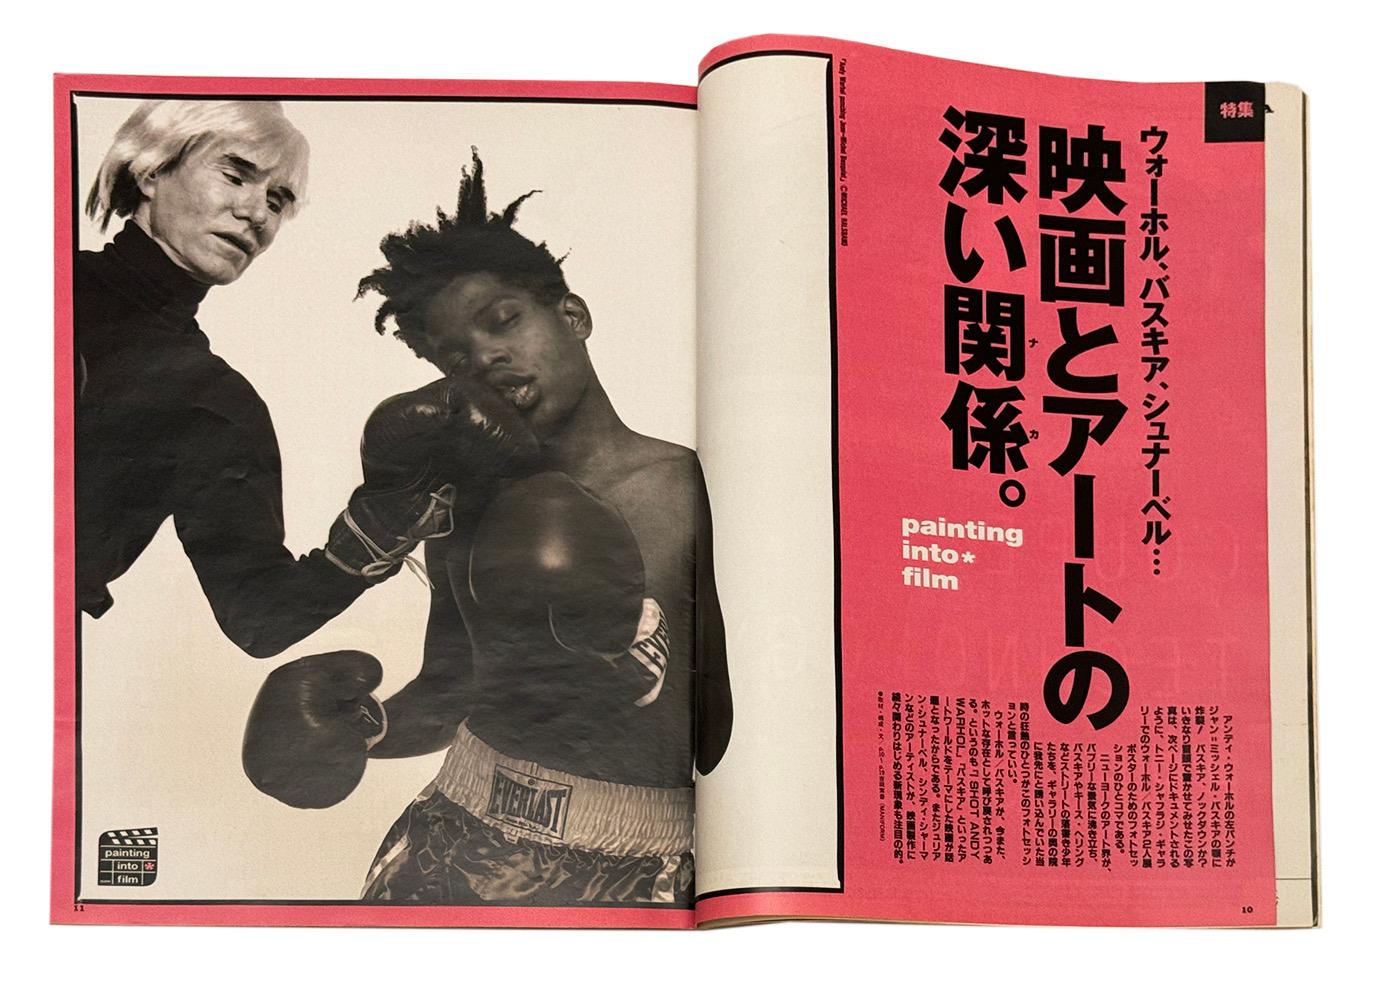 Rare magazine vintage 1997 de Brutus (Japon) explorant l'histoire de Basquiat et documentant la sortie du film Basquiat de Schnabel au Japon en 1997. La couverture présente une reproduction de la très emblématique photo de boxe Warhol/Basquiat de